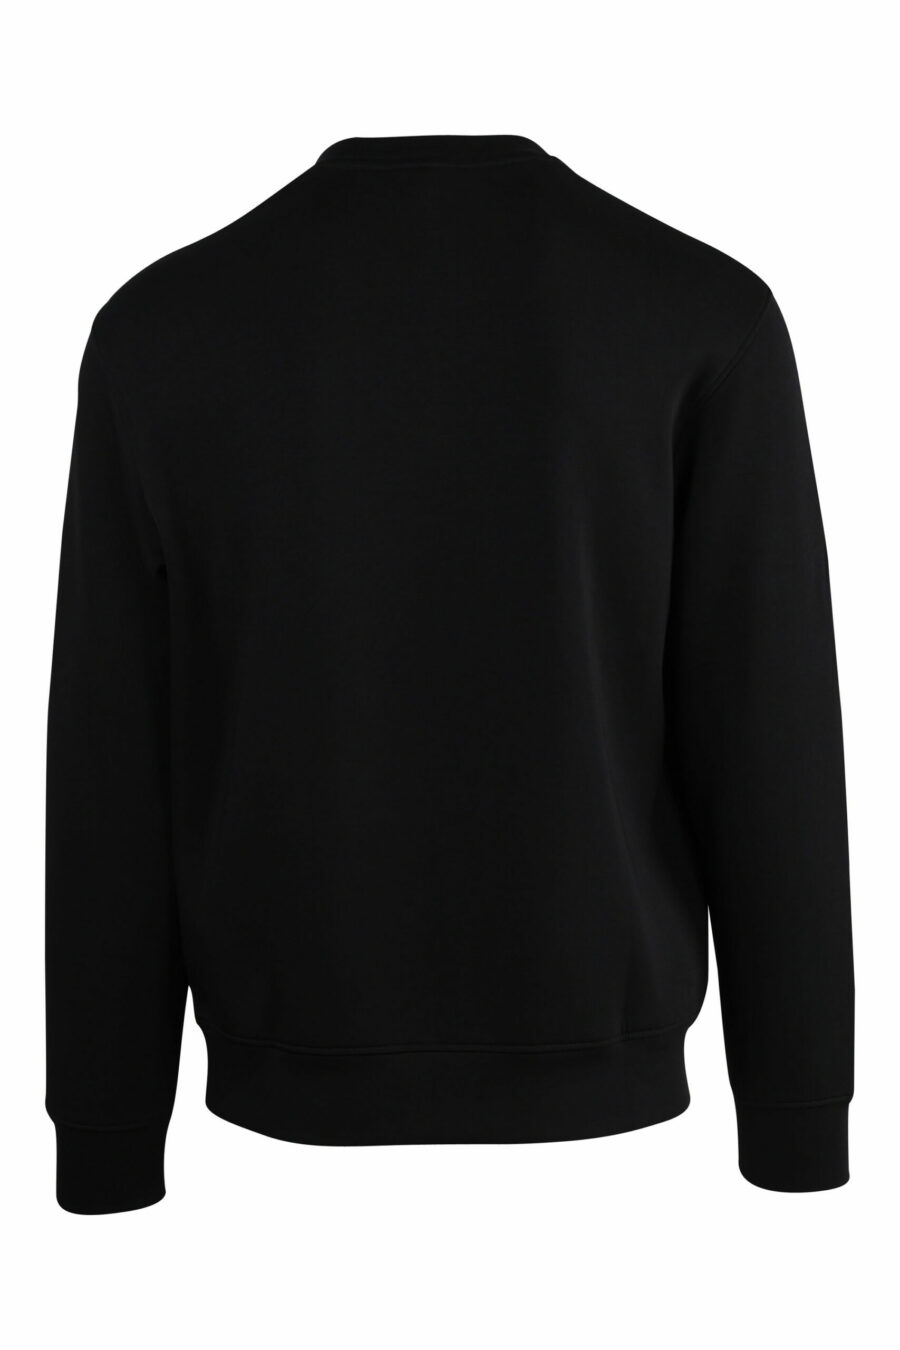 Black sweatshirt with eagle maxilogo - 8057767552367 scaled